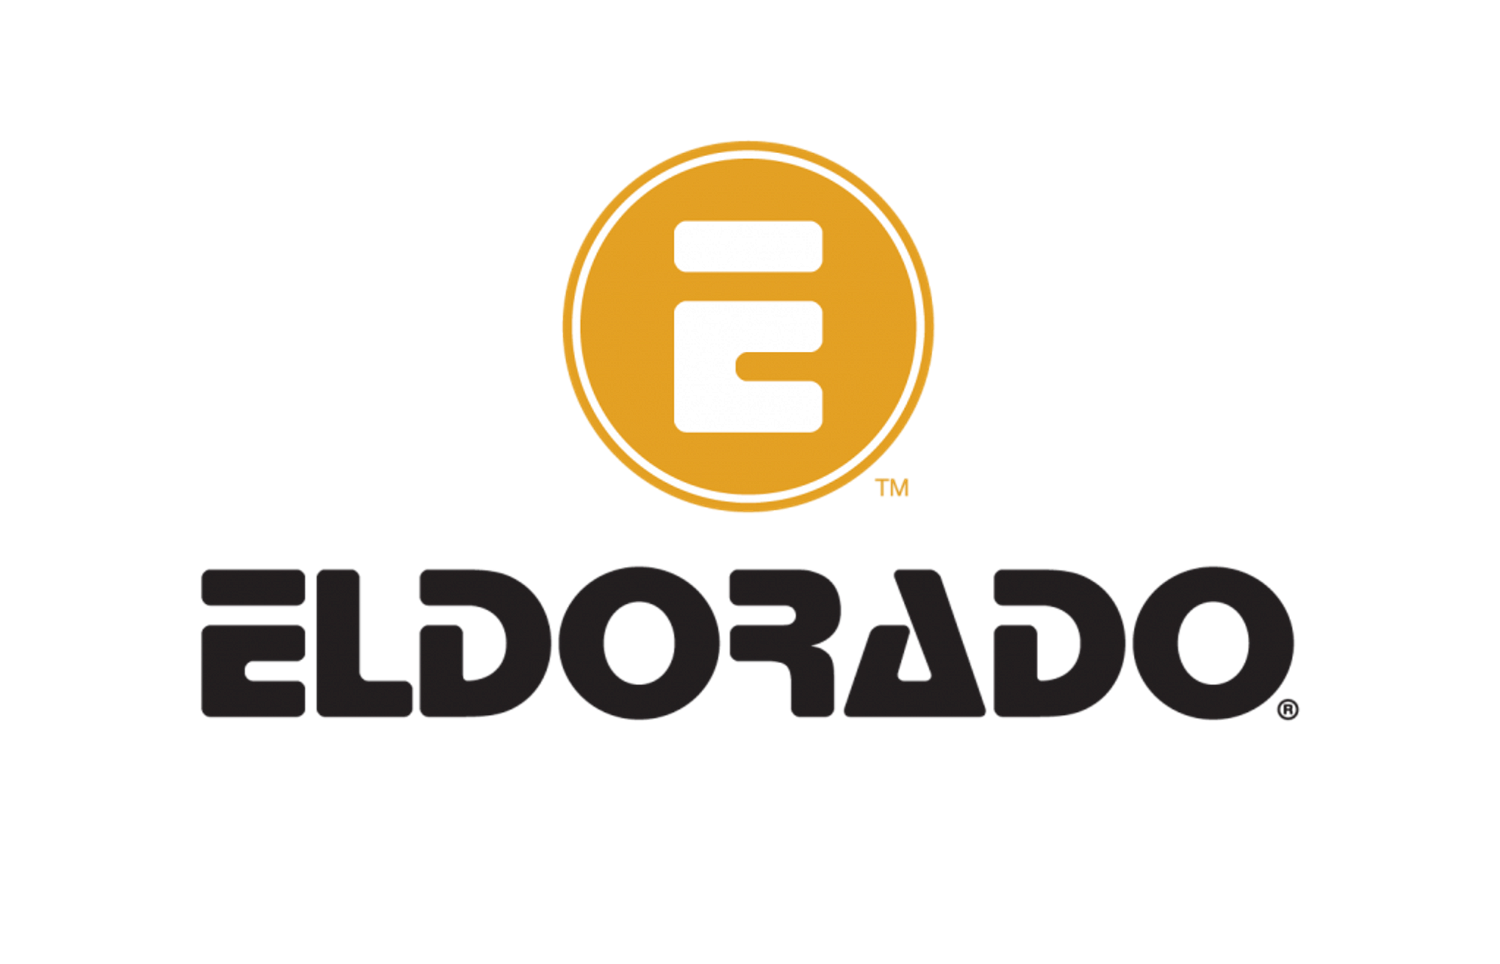 Eldorado released new lesson in Elevate U Series